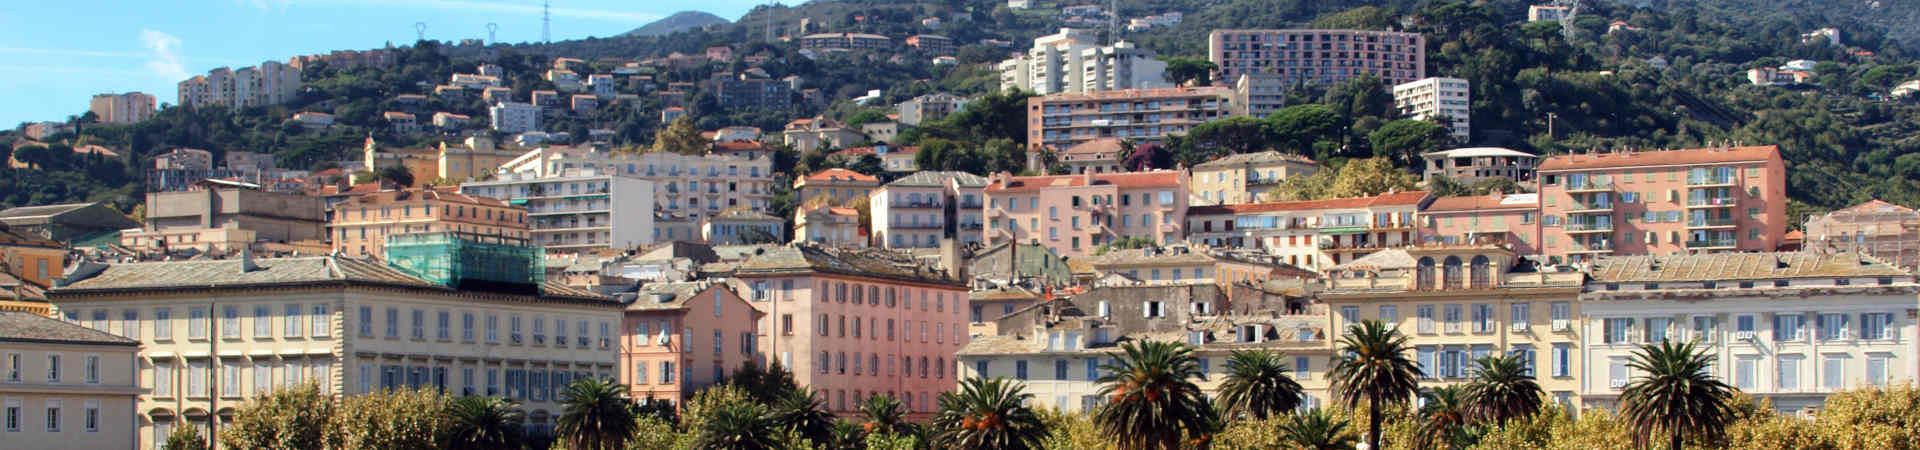 Image ressource du port de destination Bastia pour l'itinéraire du ferry Livourne - Bastia